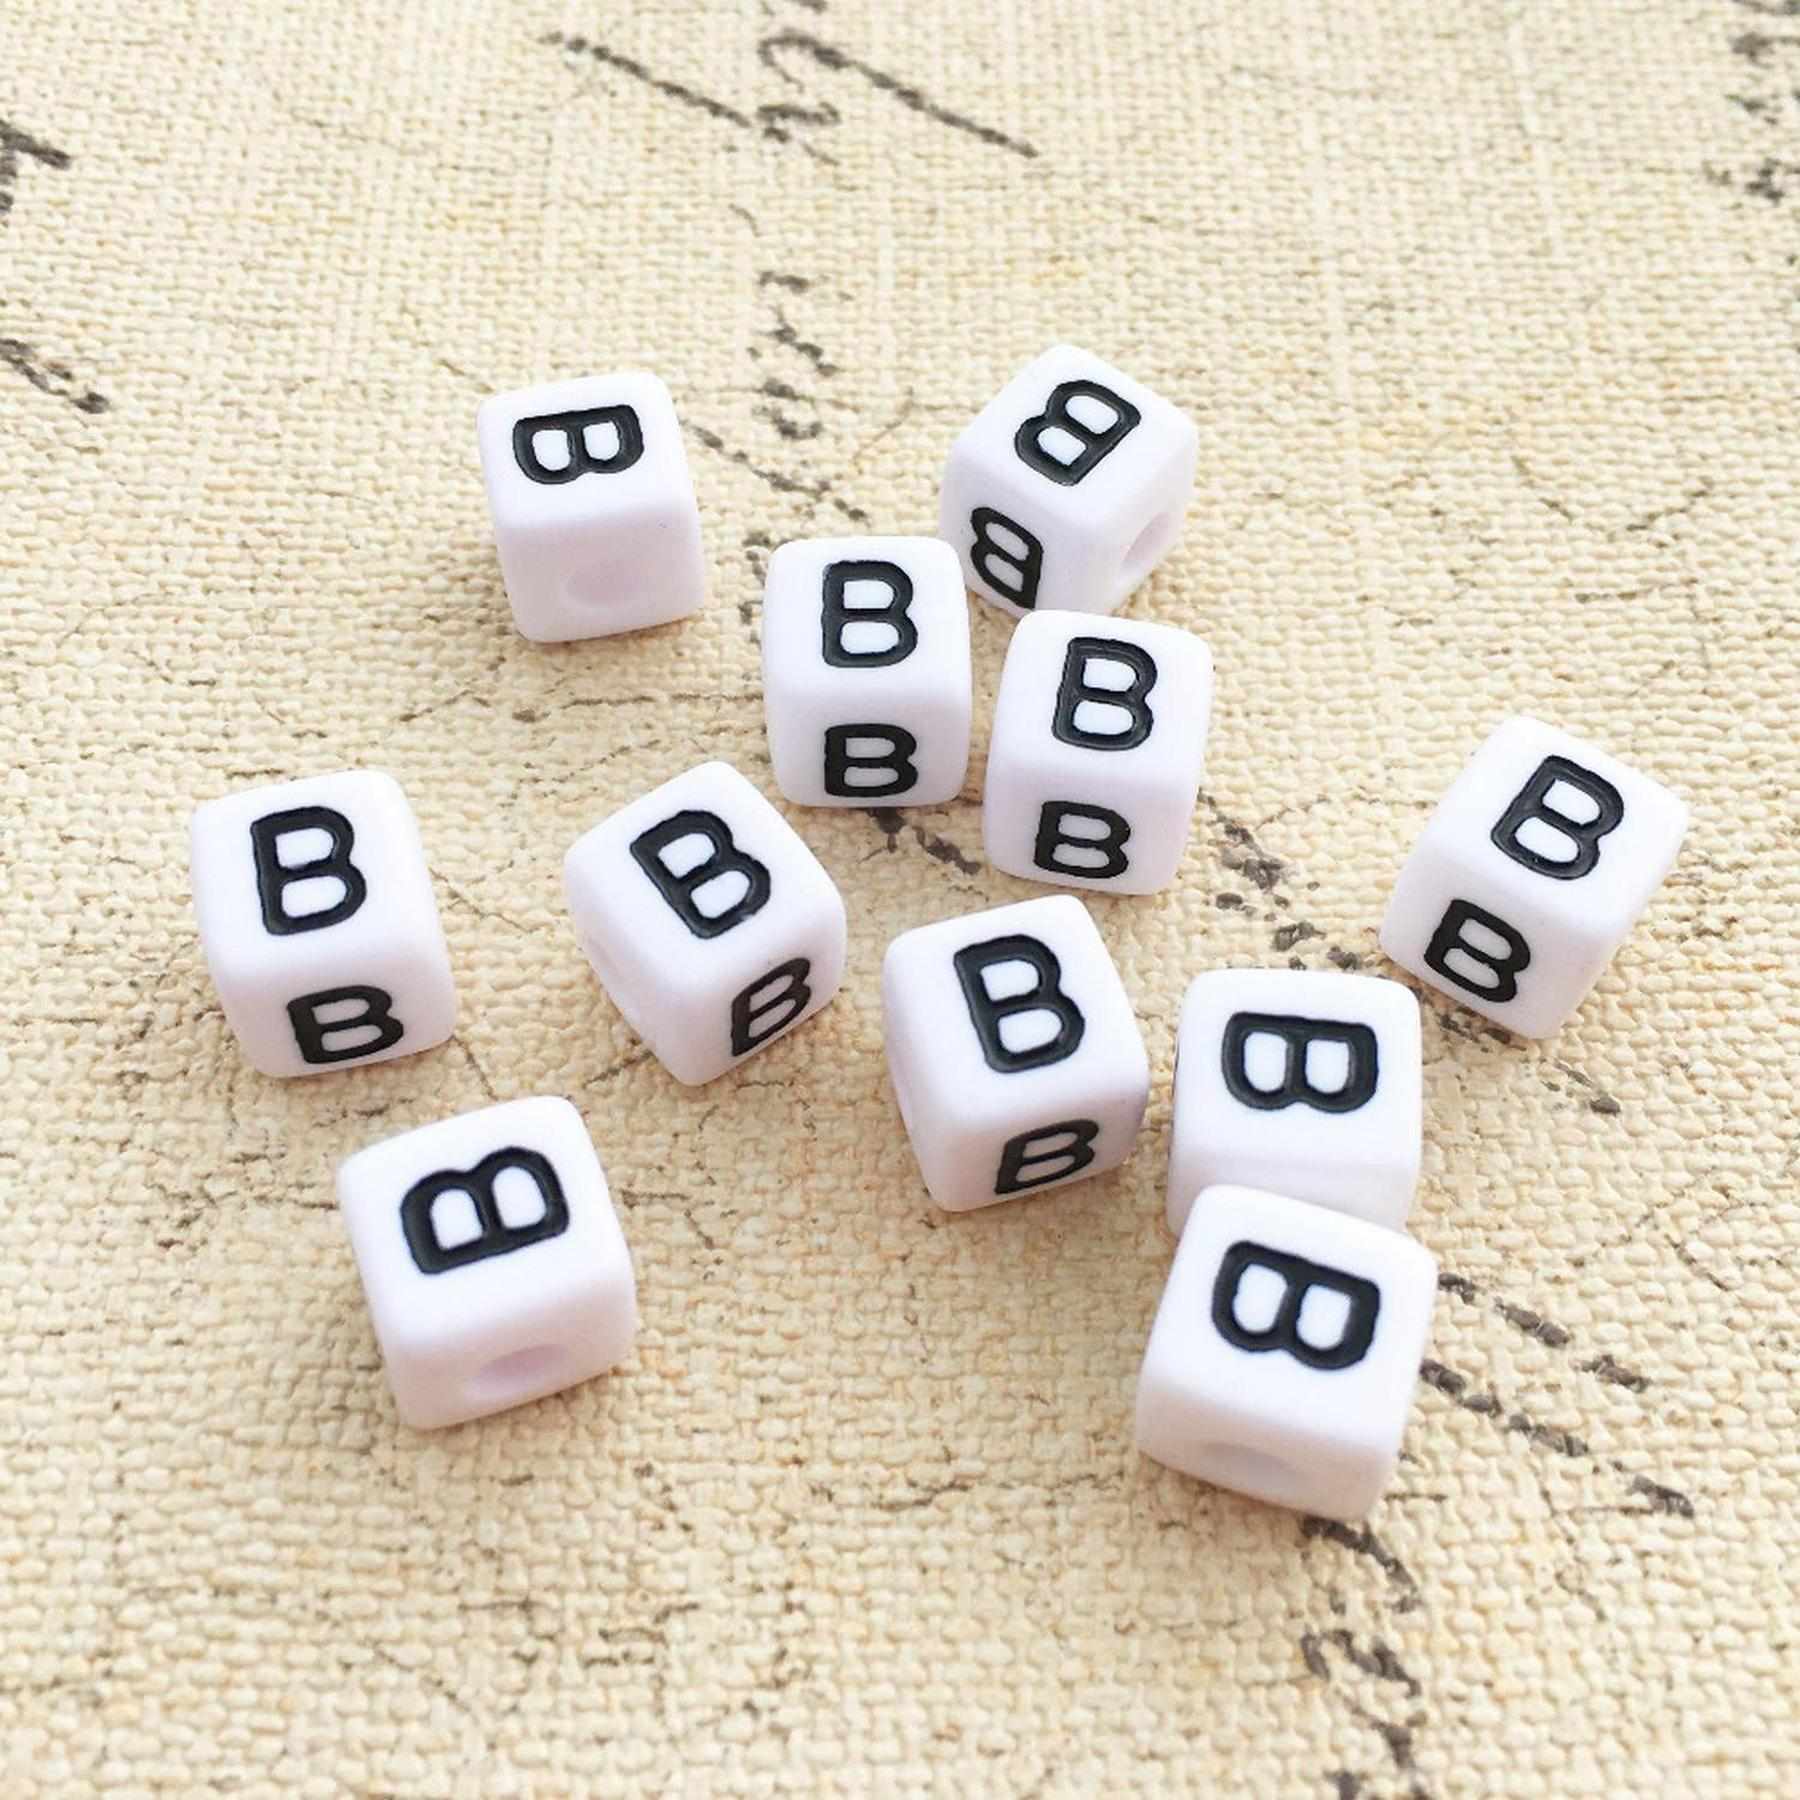 Buchstaben Perlen, 30 Stück, 6x6 mm, weiß mit schwarz, eckig, Buchstabe B